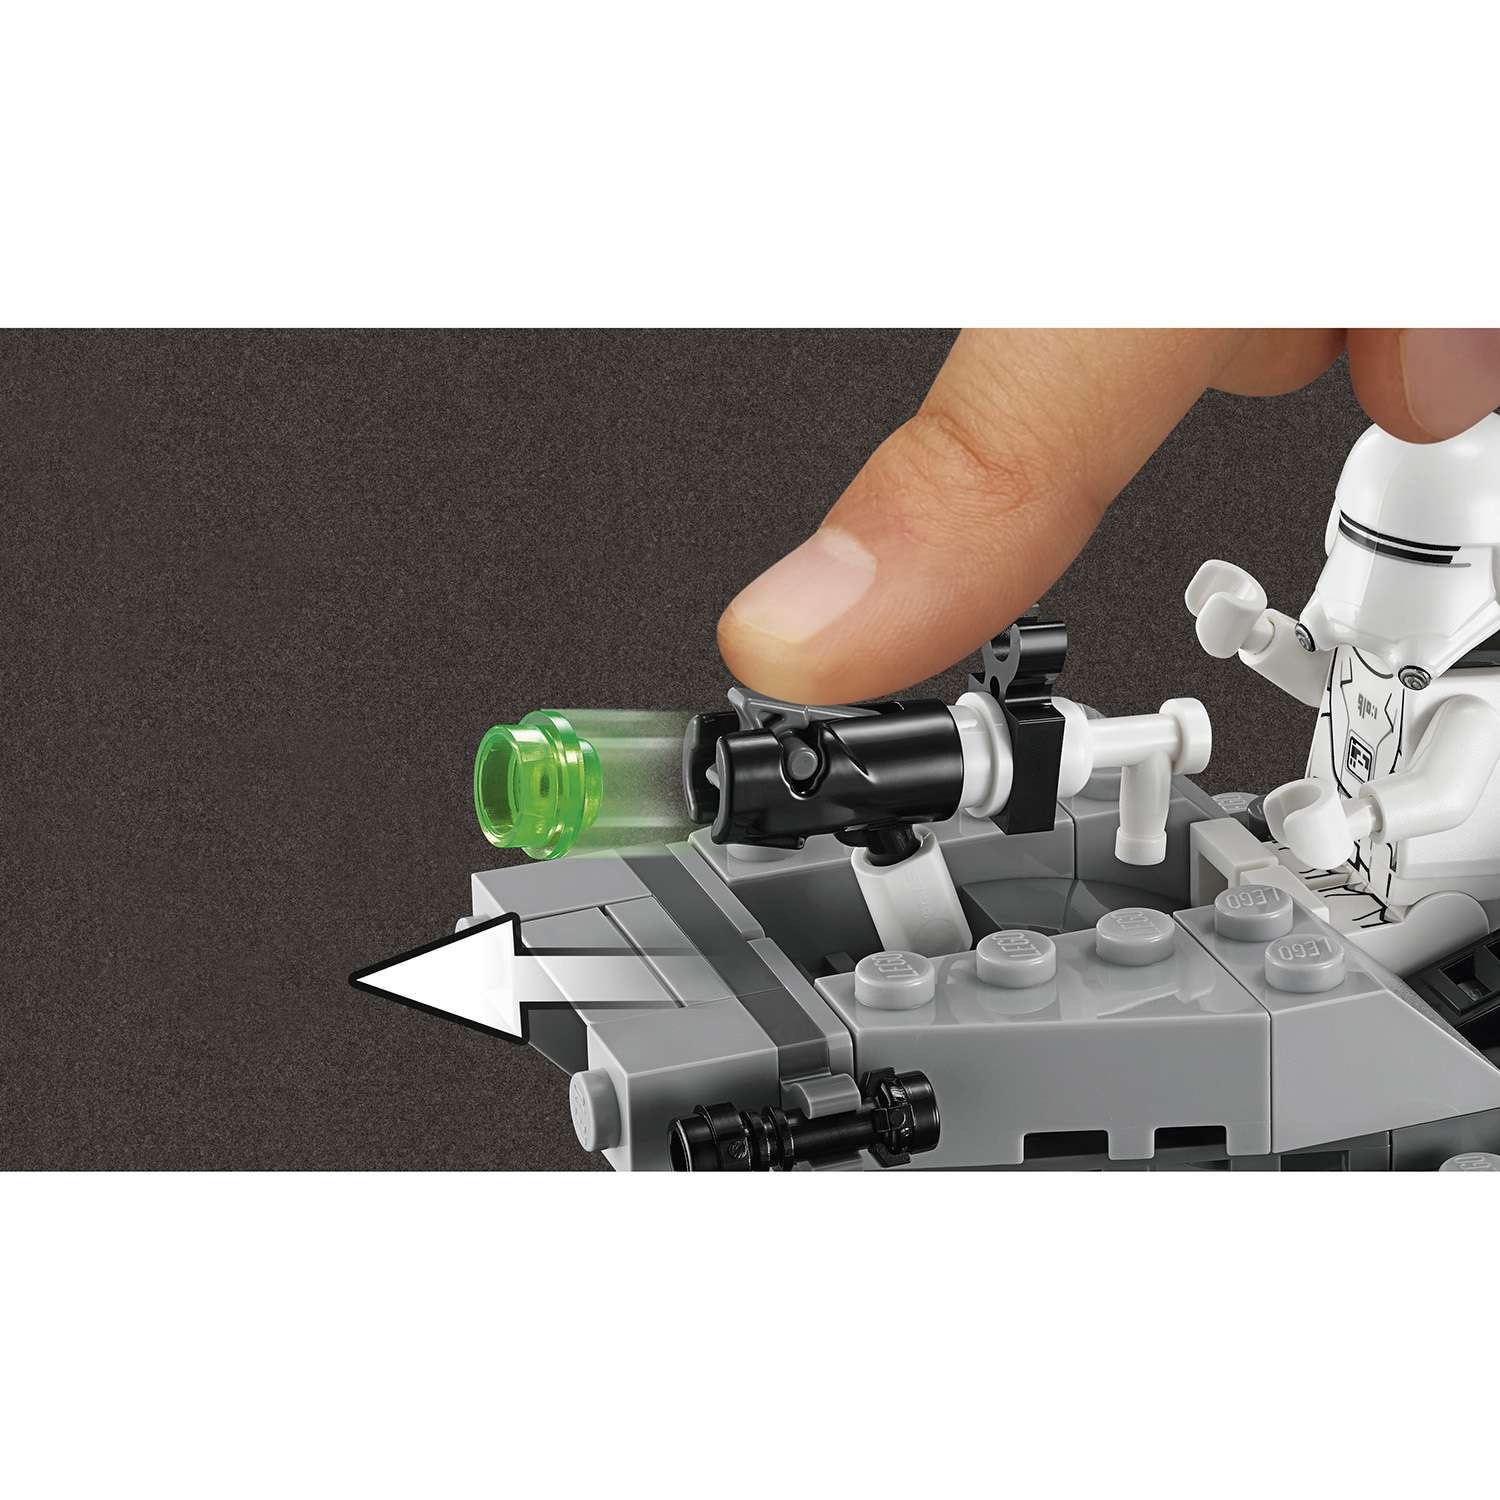 Конструктор LEGO Star Wars TM Снежный спидер Первого Ордена™ (75126) - фото 6